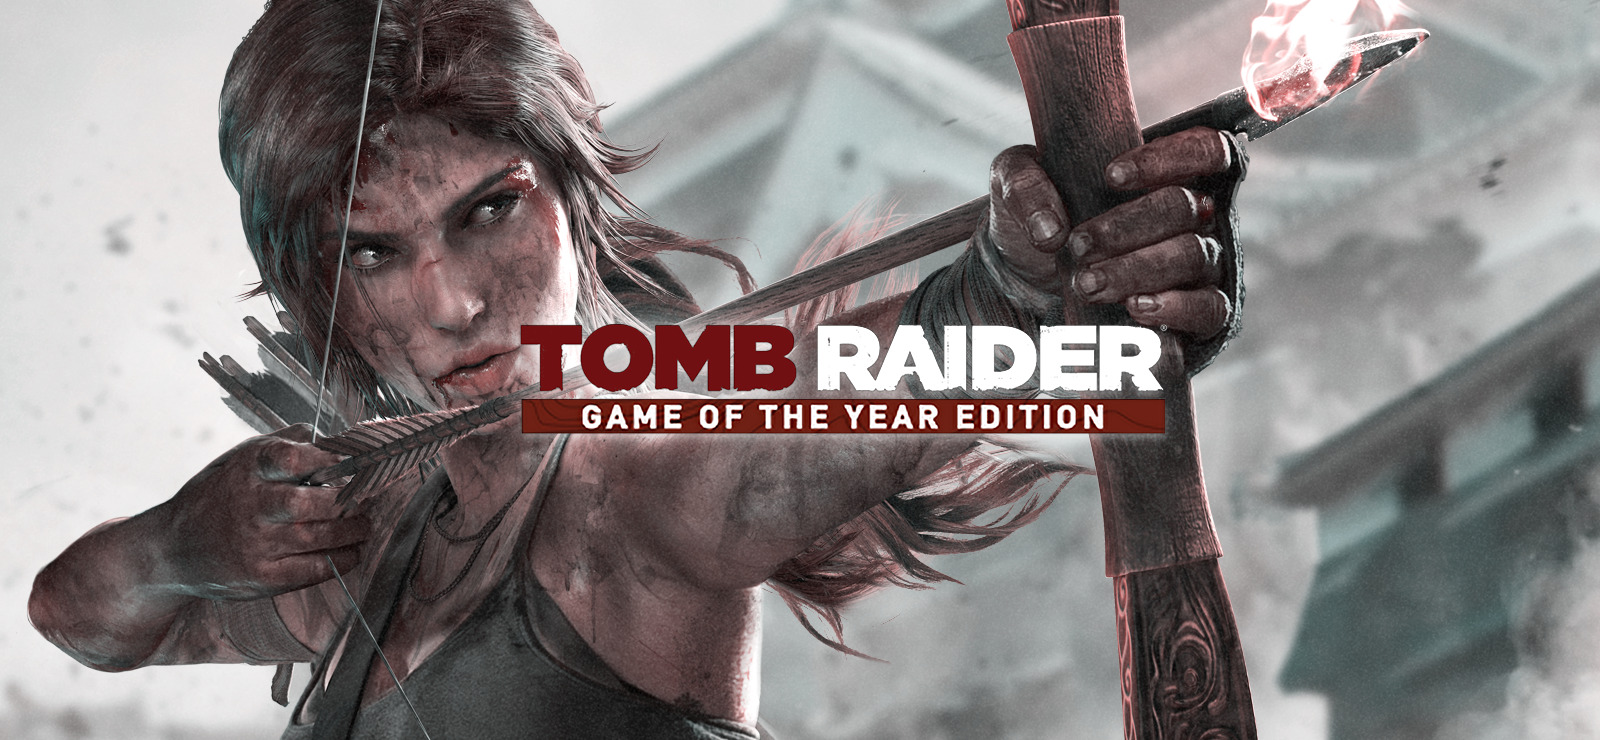 80% Tomb Raider GOTY on